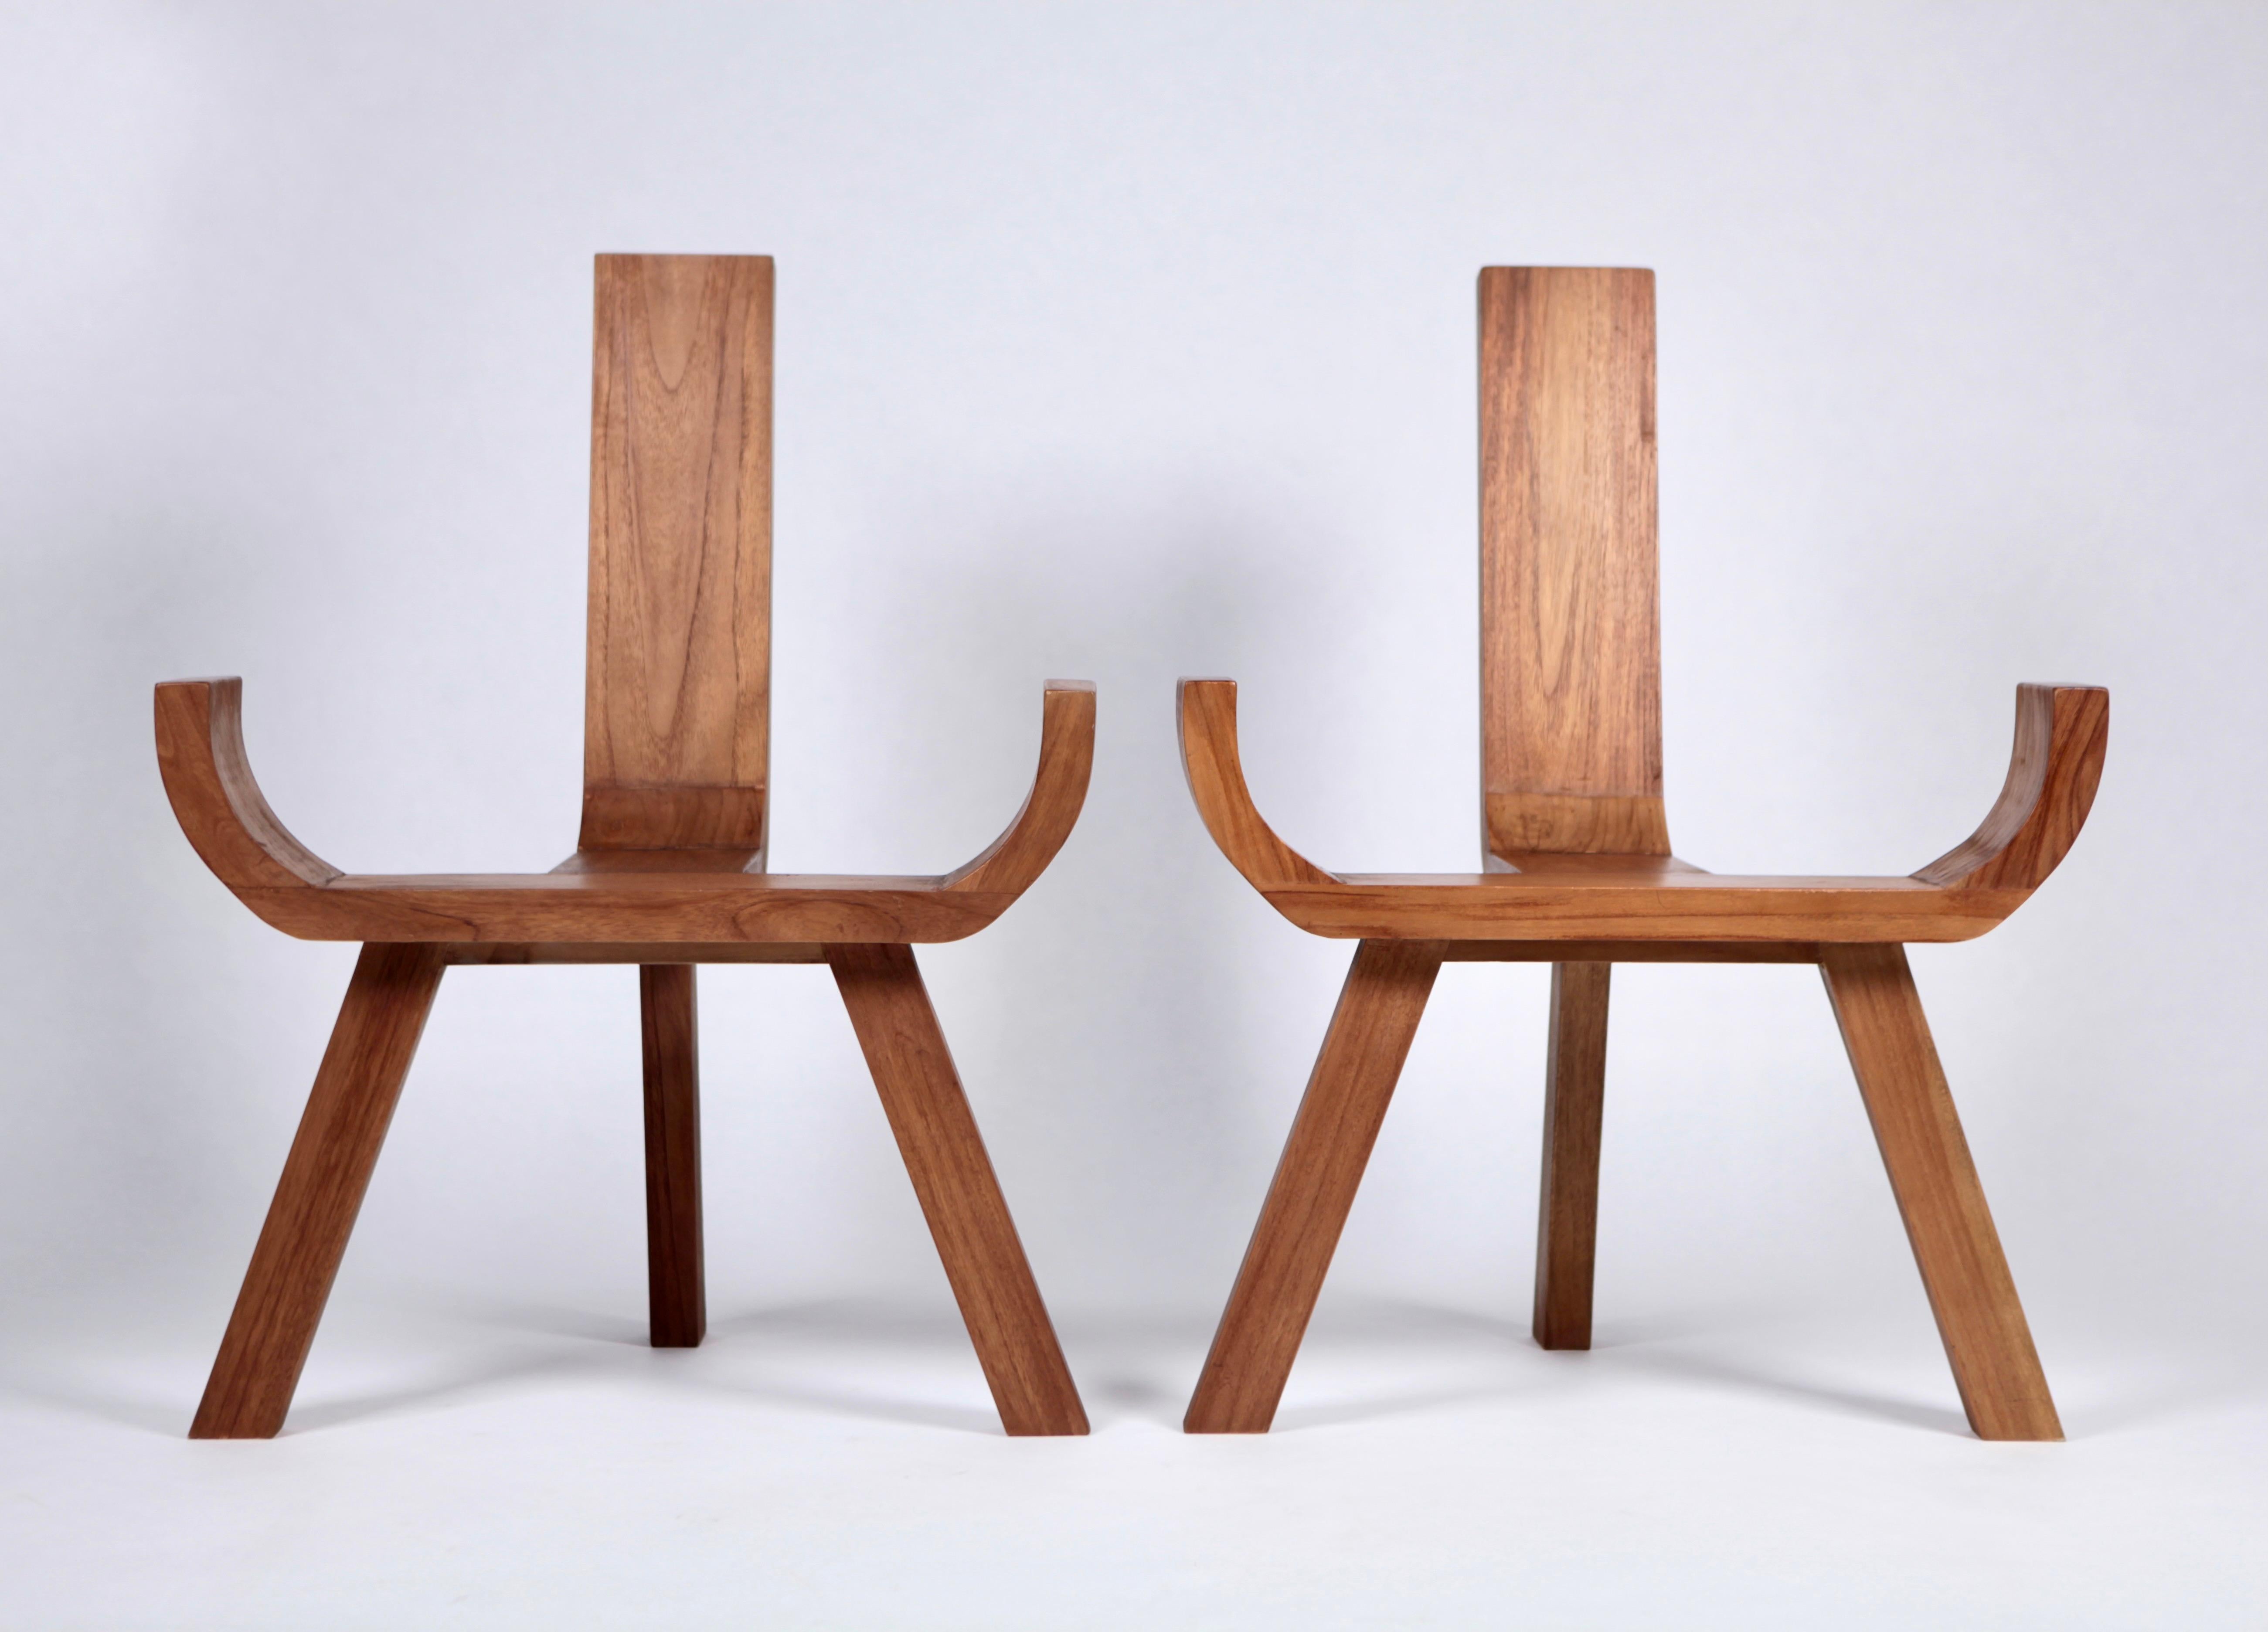 Paire de rares fauteuils sculpturaux en teck, œuvre danoise des années 1960.
Il attire tous les regards et est très confortable.
Excellent état vintage.